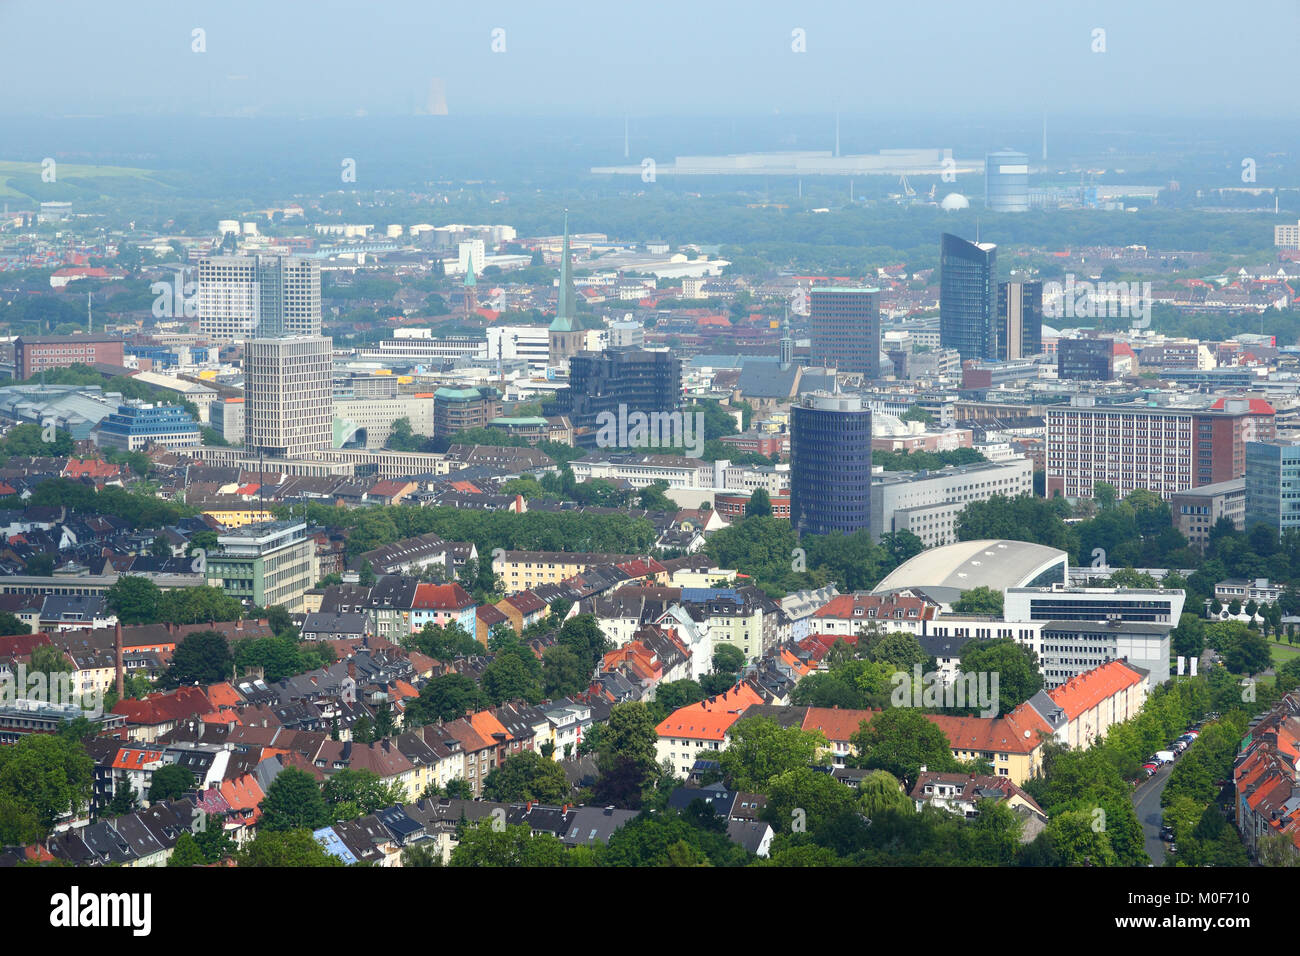 Dortmund - ciudad de Ruhrgebiet (región metropolitana del Ruhr) en Alemania. Vista aérea. Foto de stock